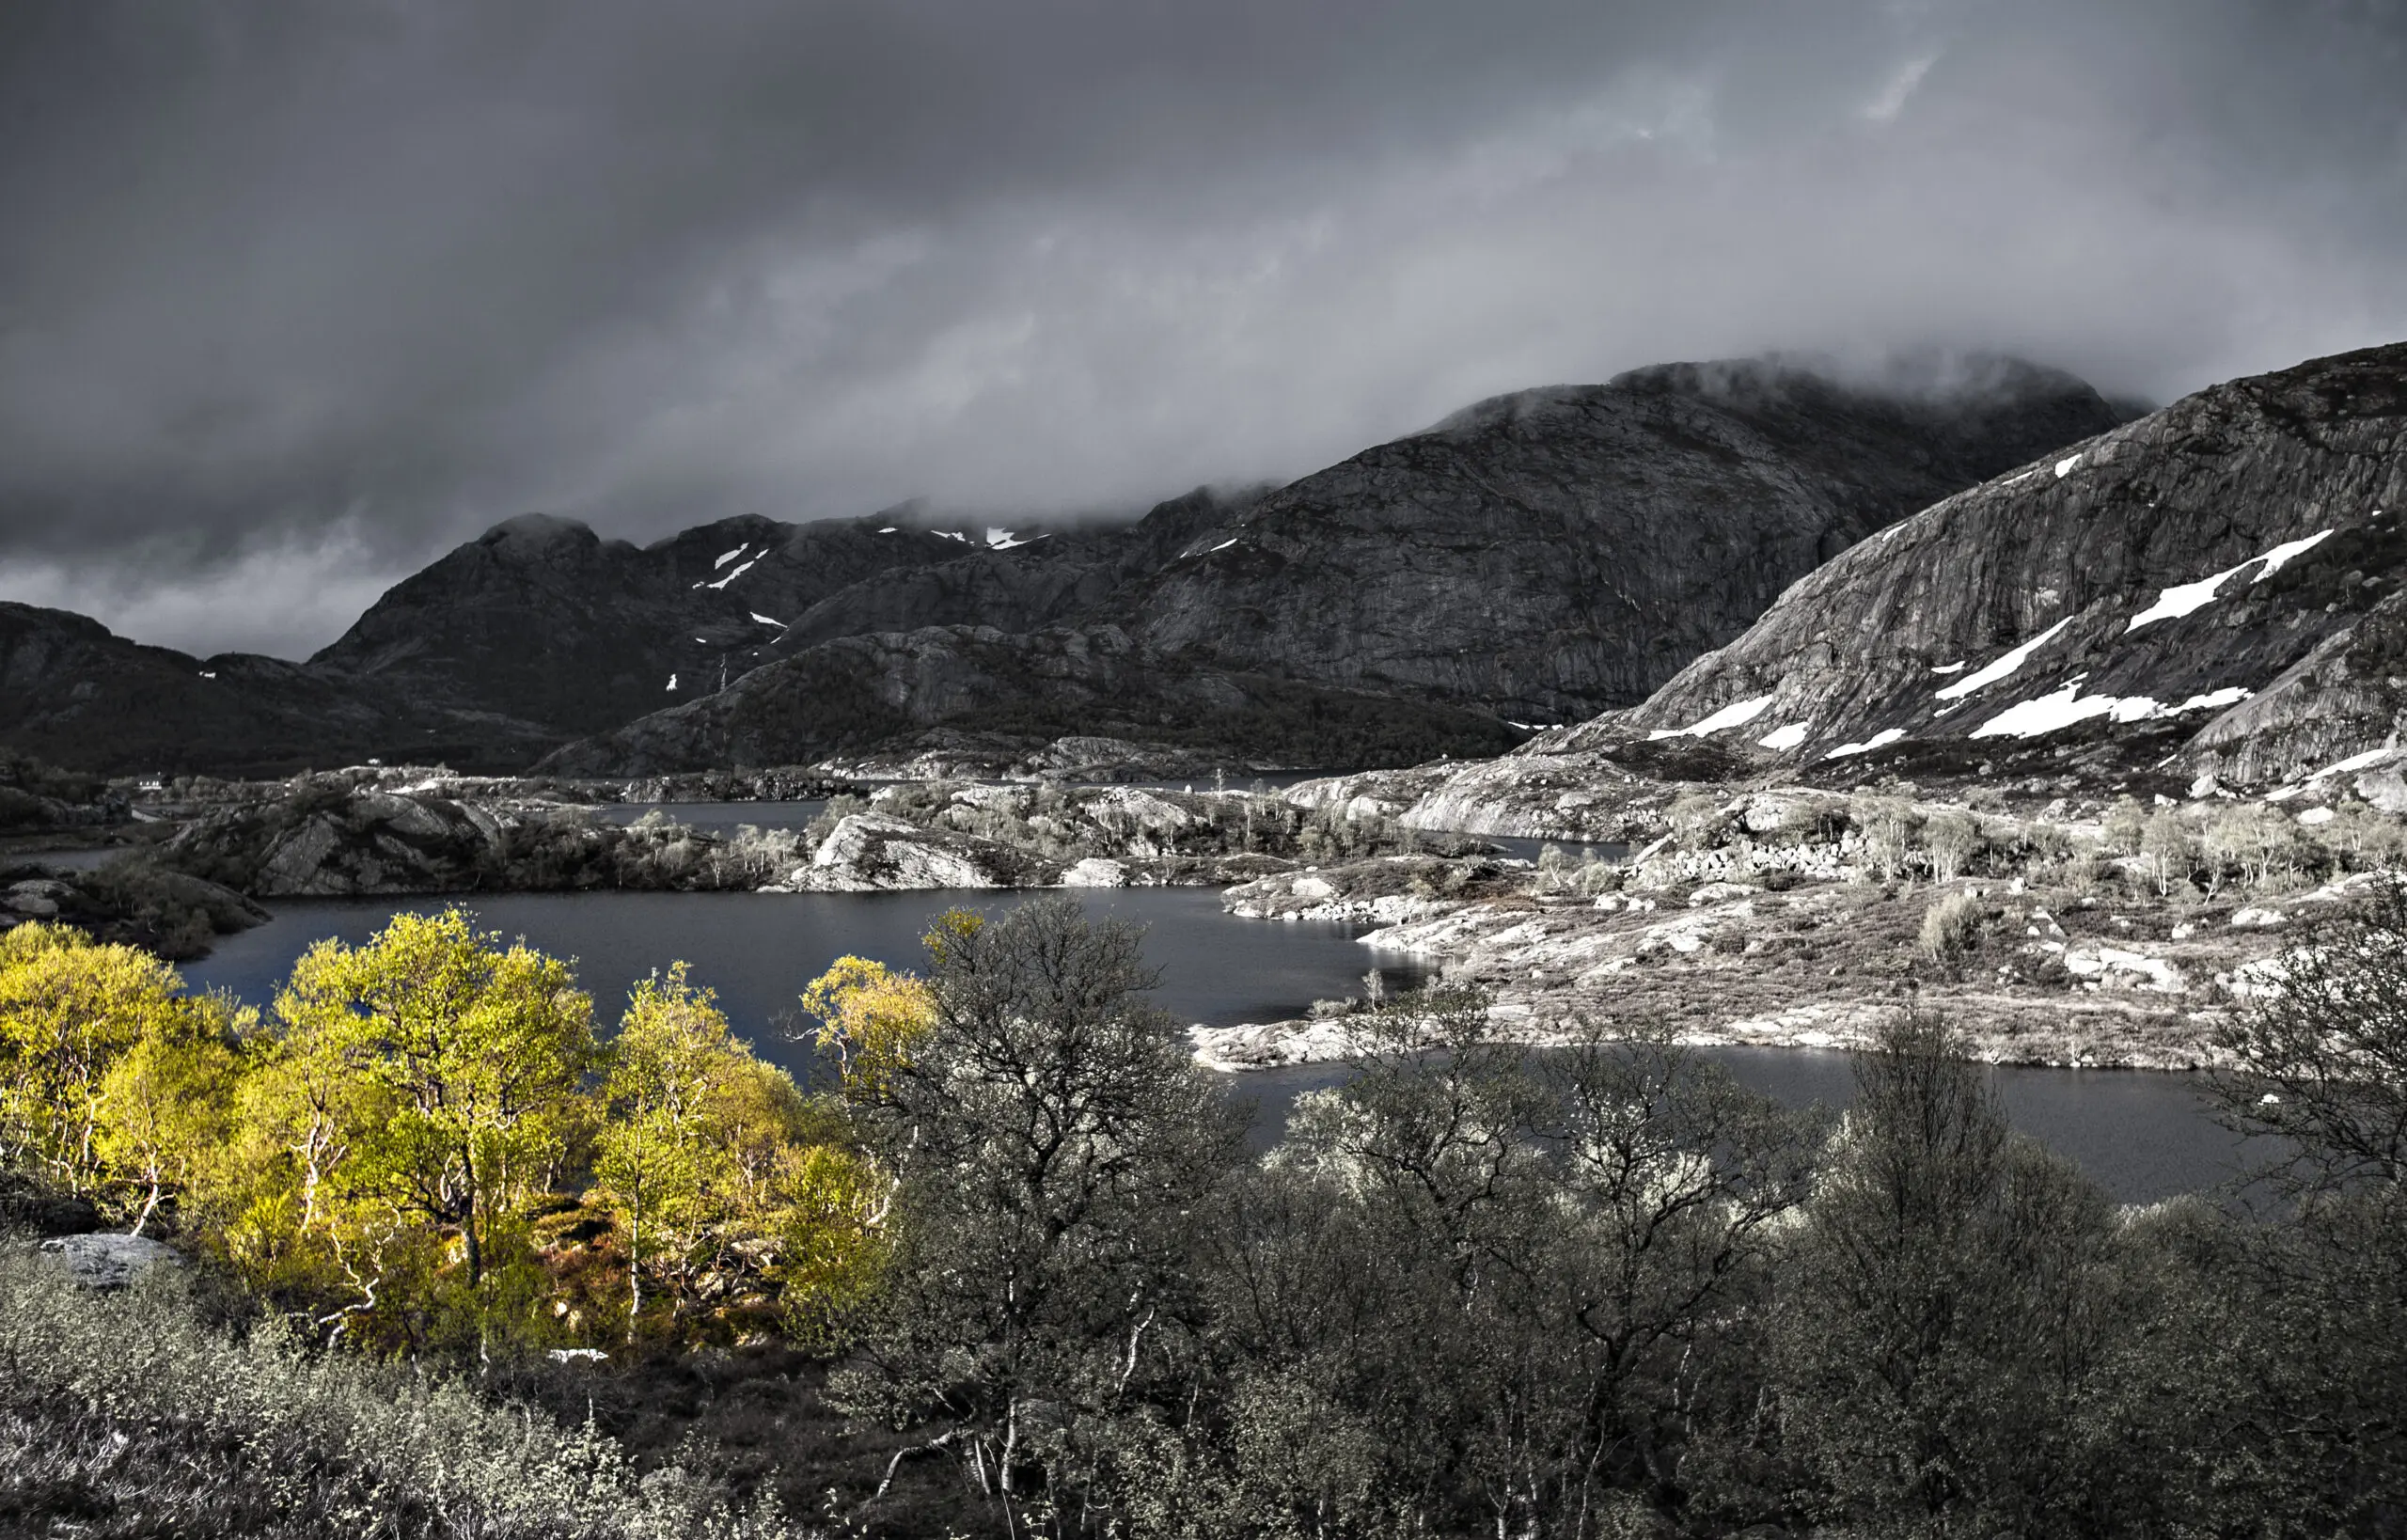 Wandbild (471) Norwegian beauty präsentiert: Wasser,Landschaften,Berge